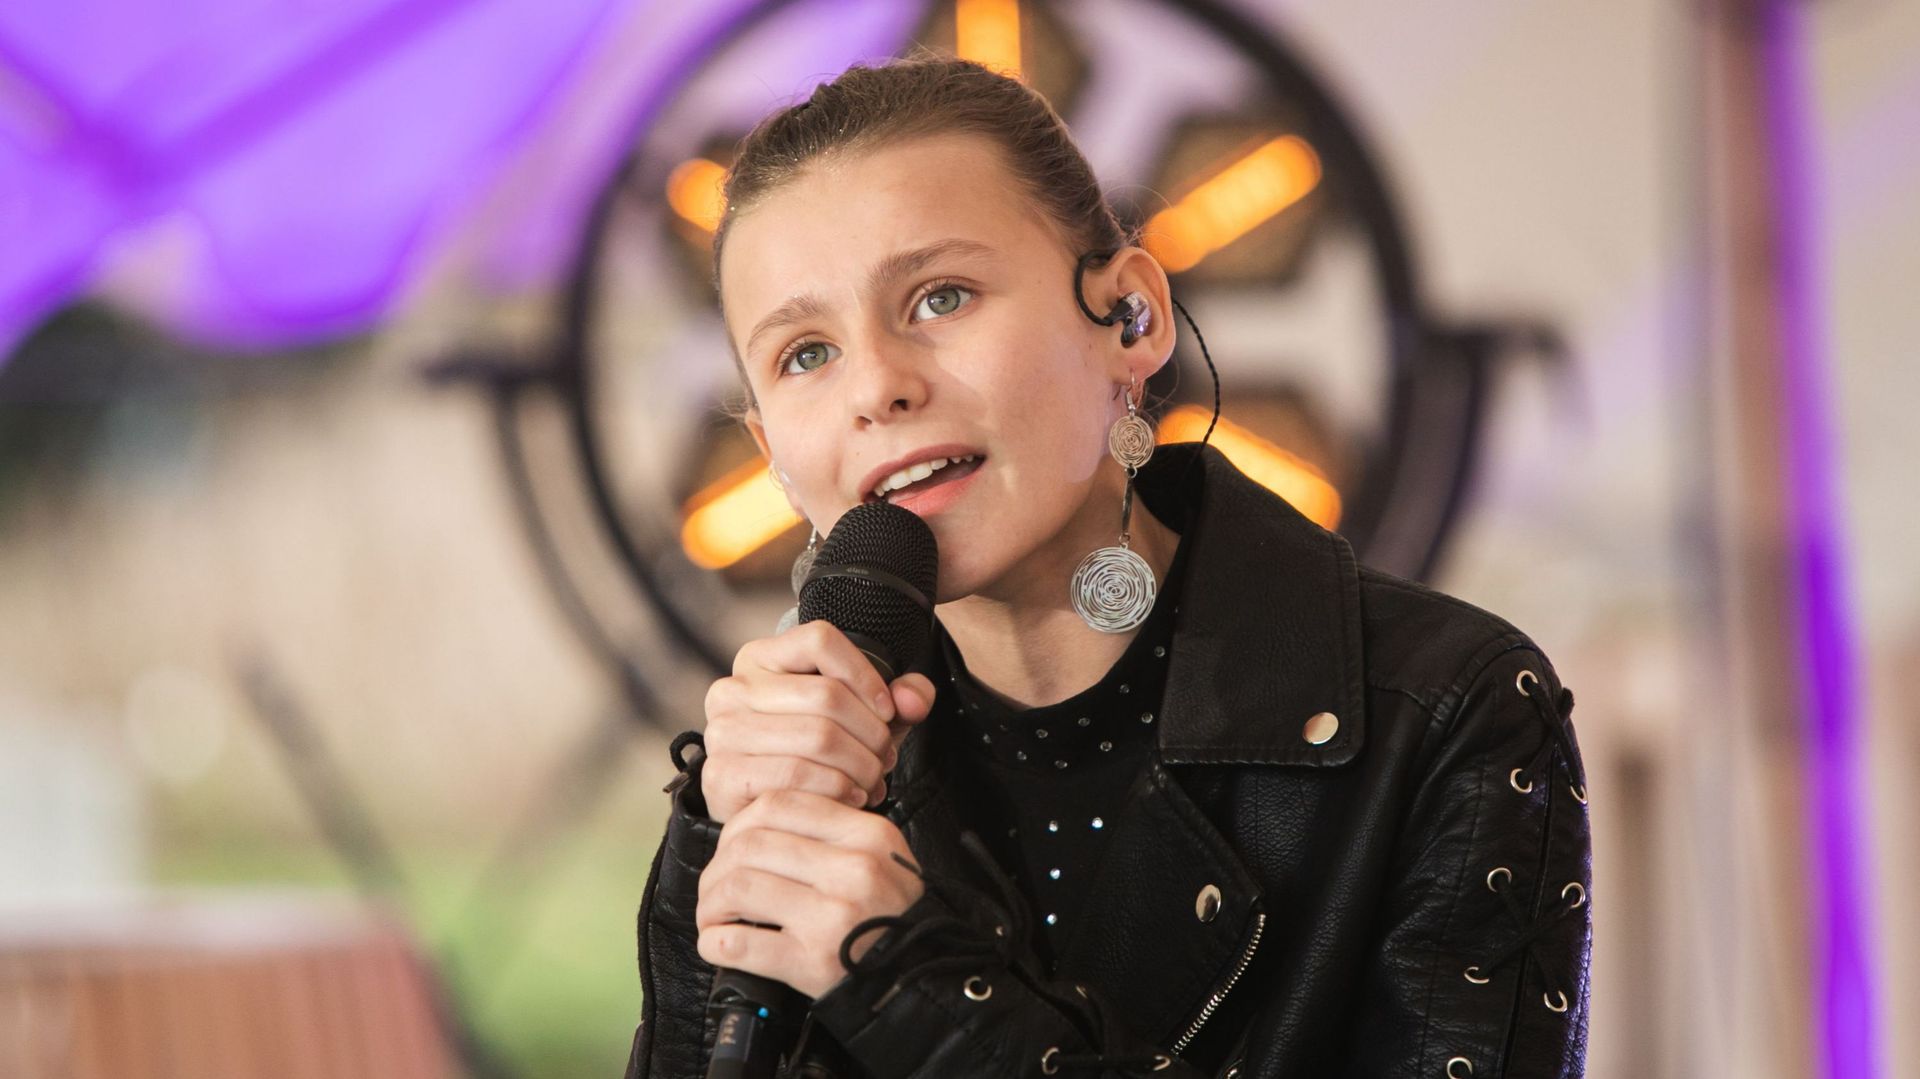 Du haut de ses 12 ans, Océana, la grande gagnante de la première édition belge de The Voice Kids est déjà une artiste au grand cœur.